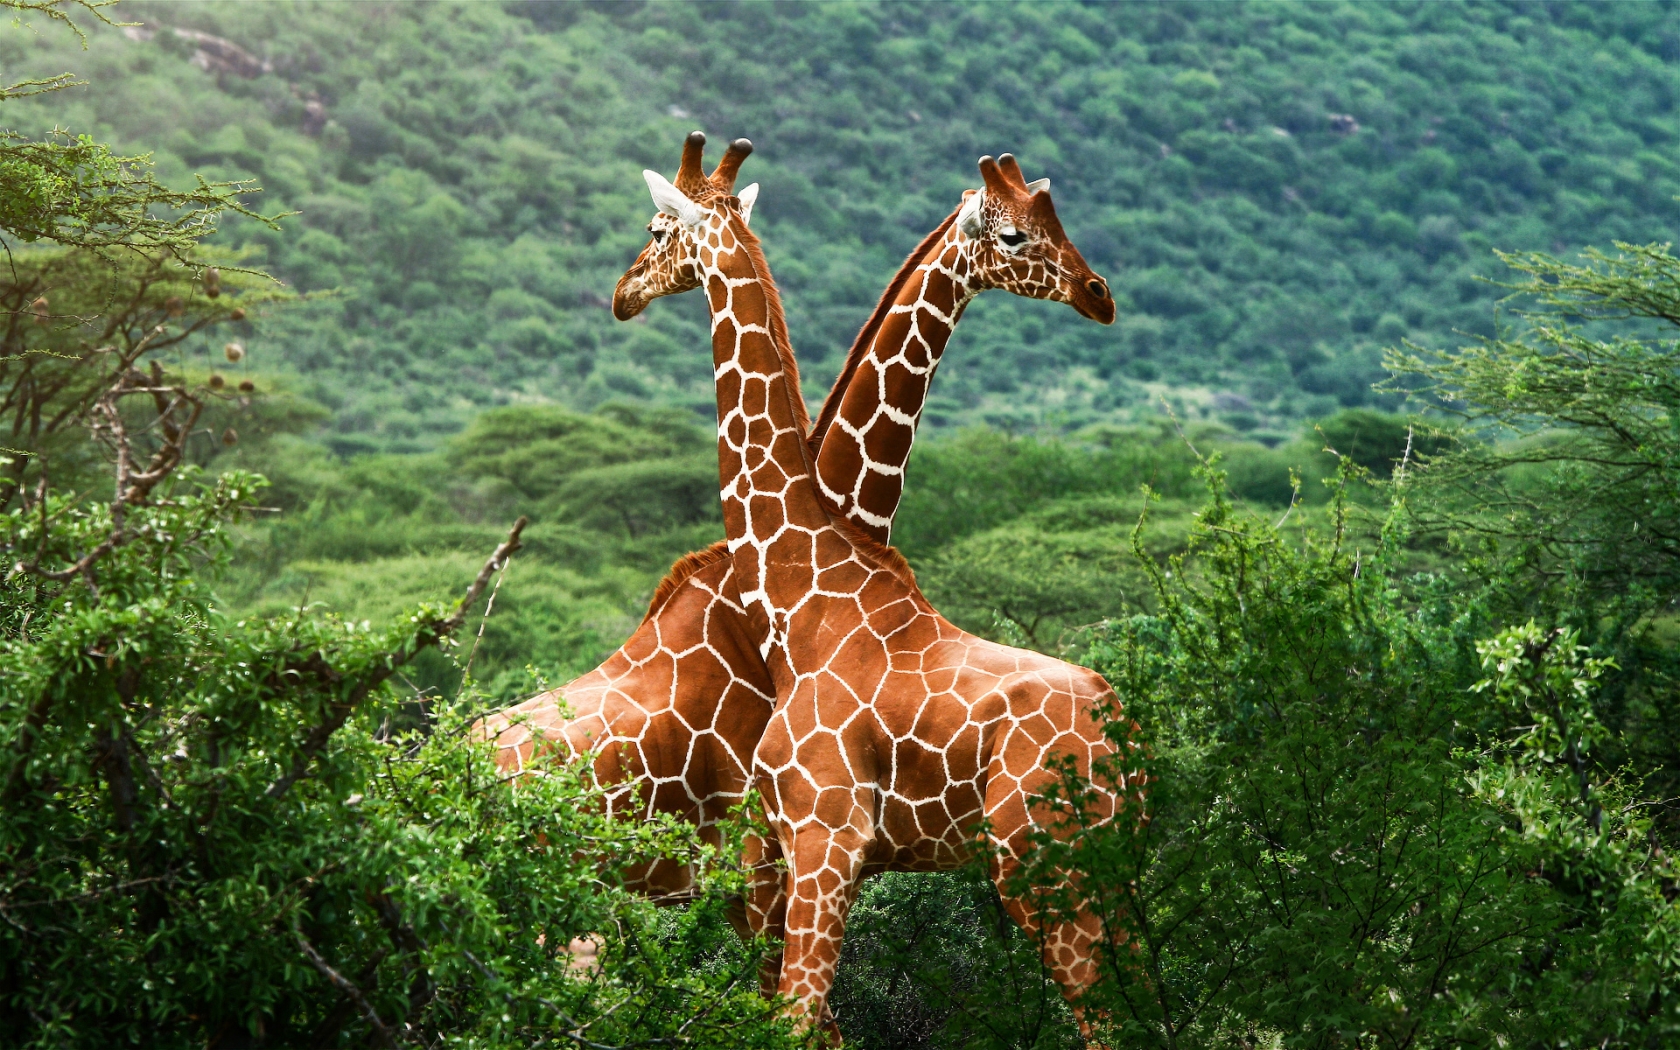 Giraffe Friends for 1680 x 1050 widescreen resolution